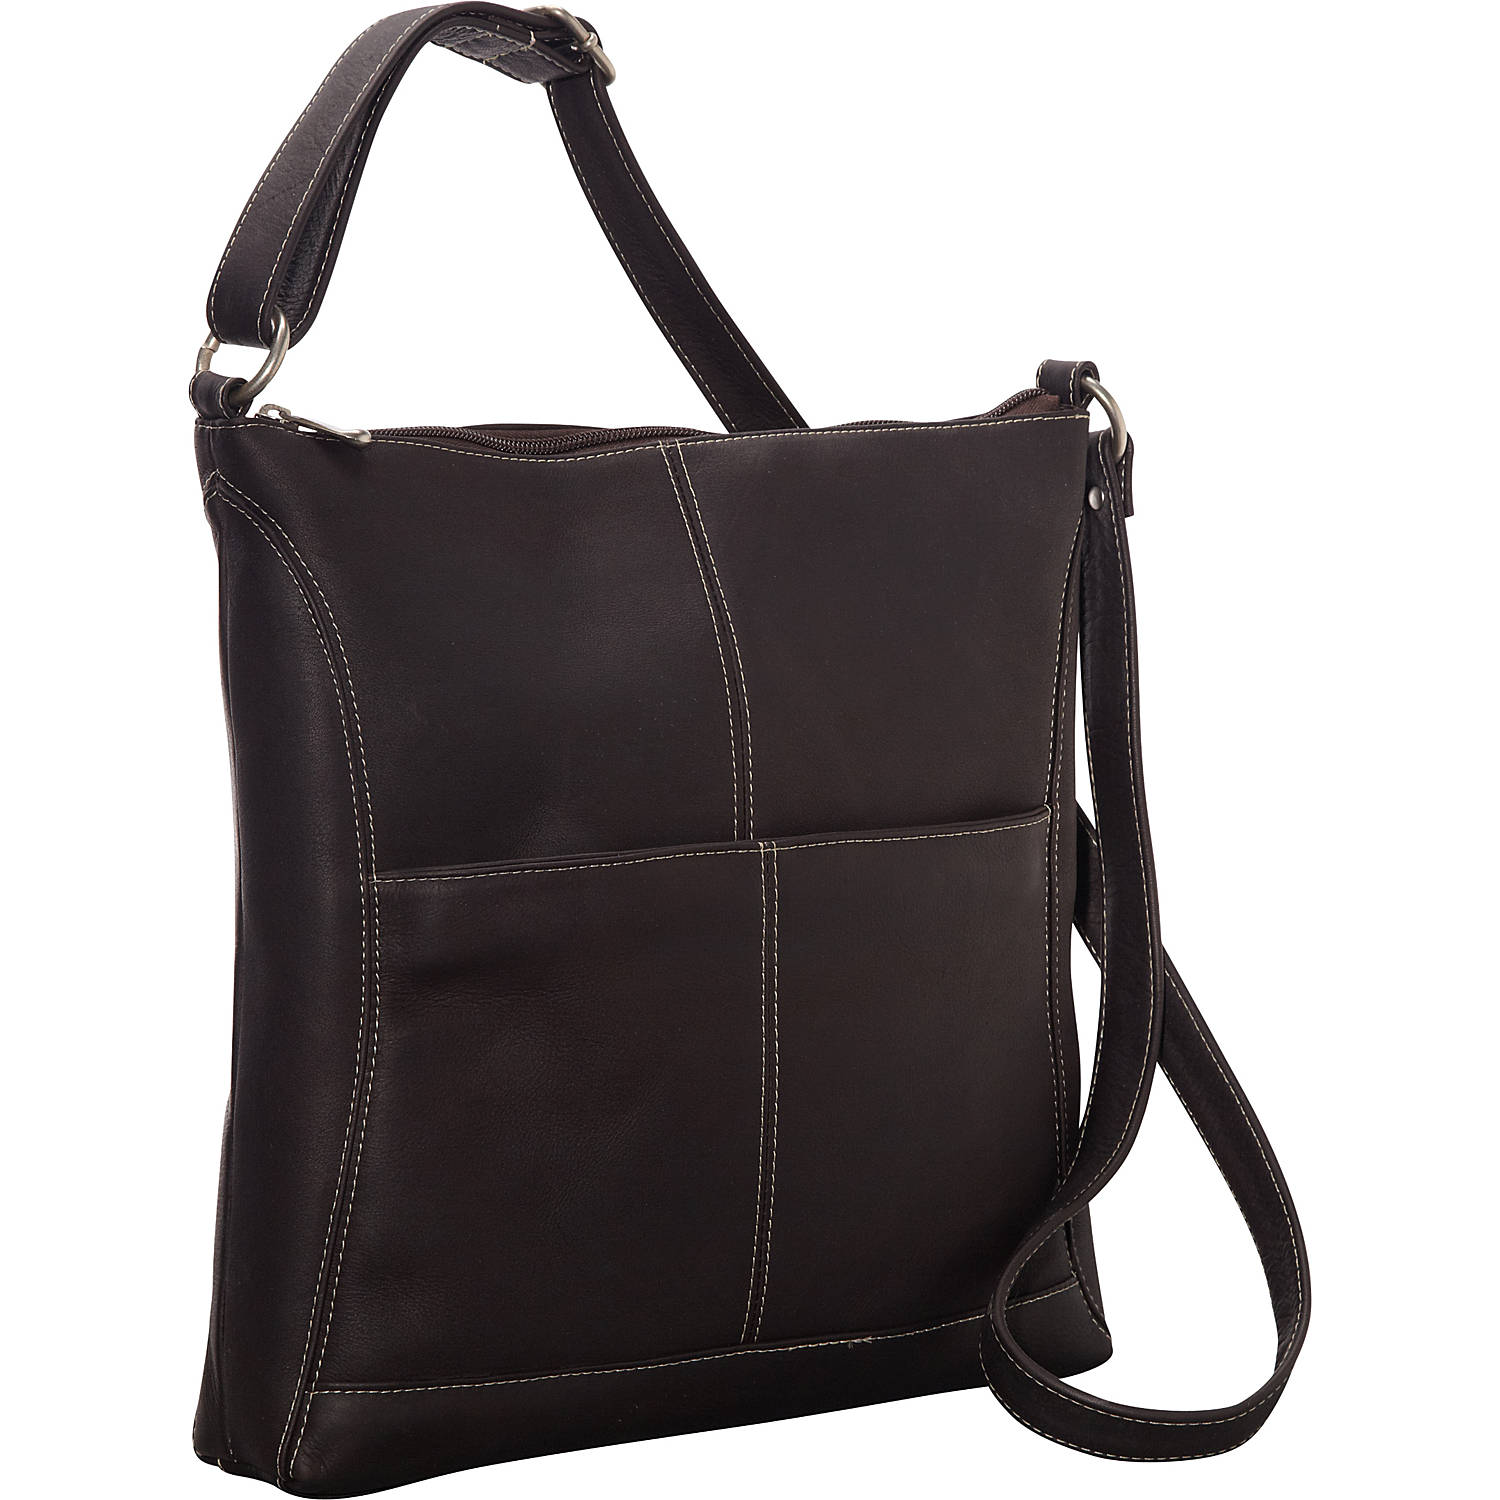 Easy Slip Crossbody Shoulder Bag - Le Donne Leather